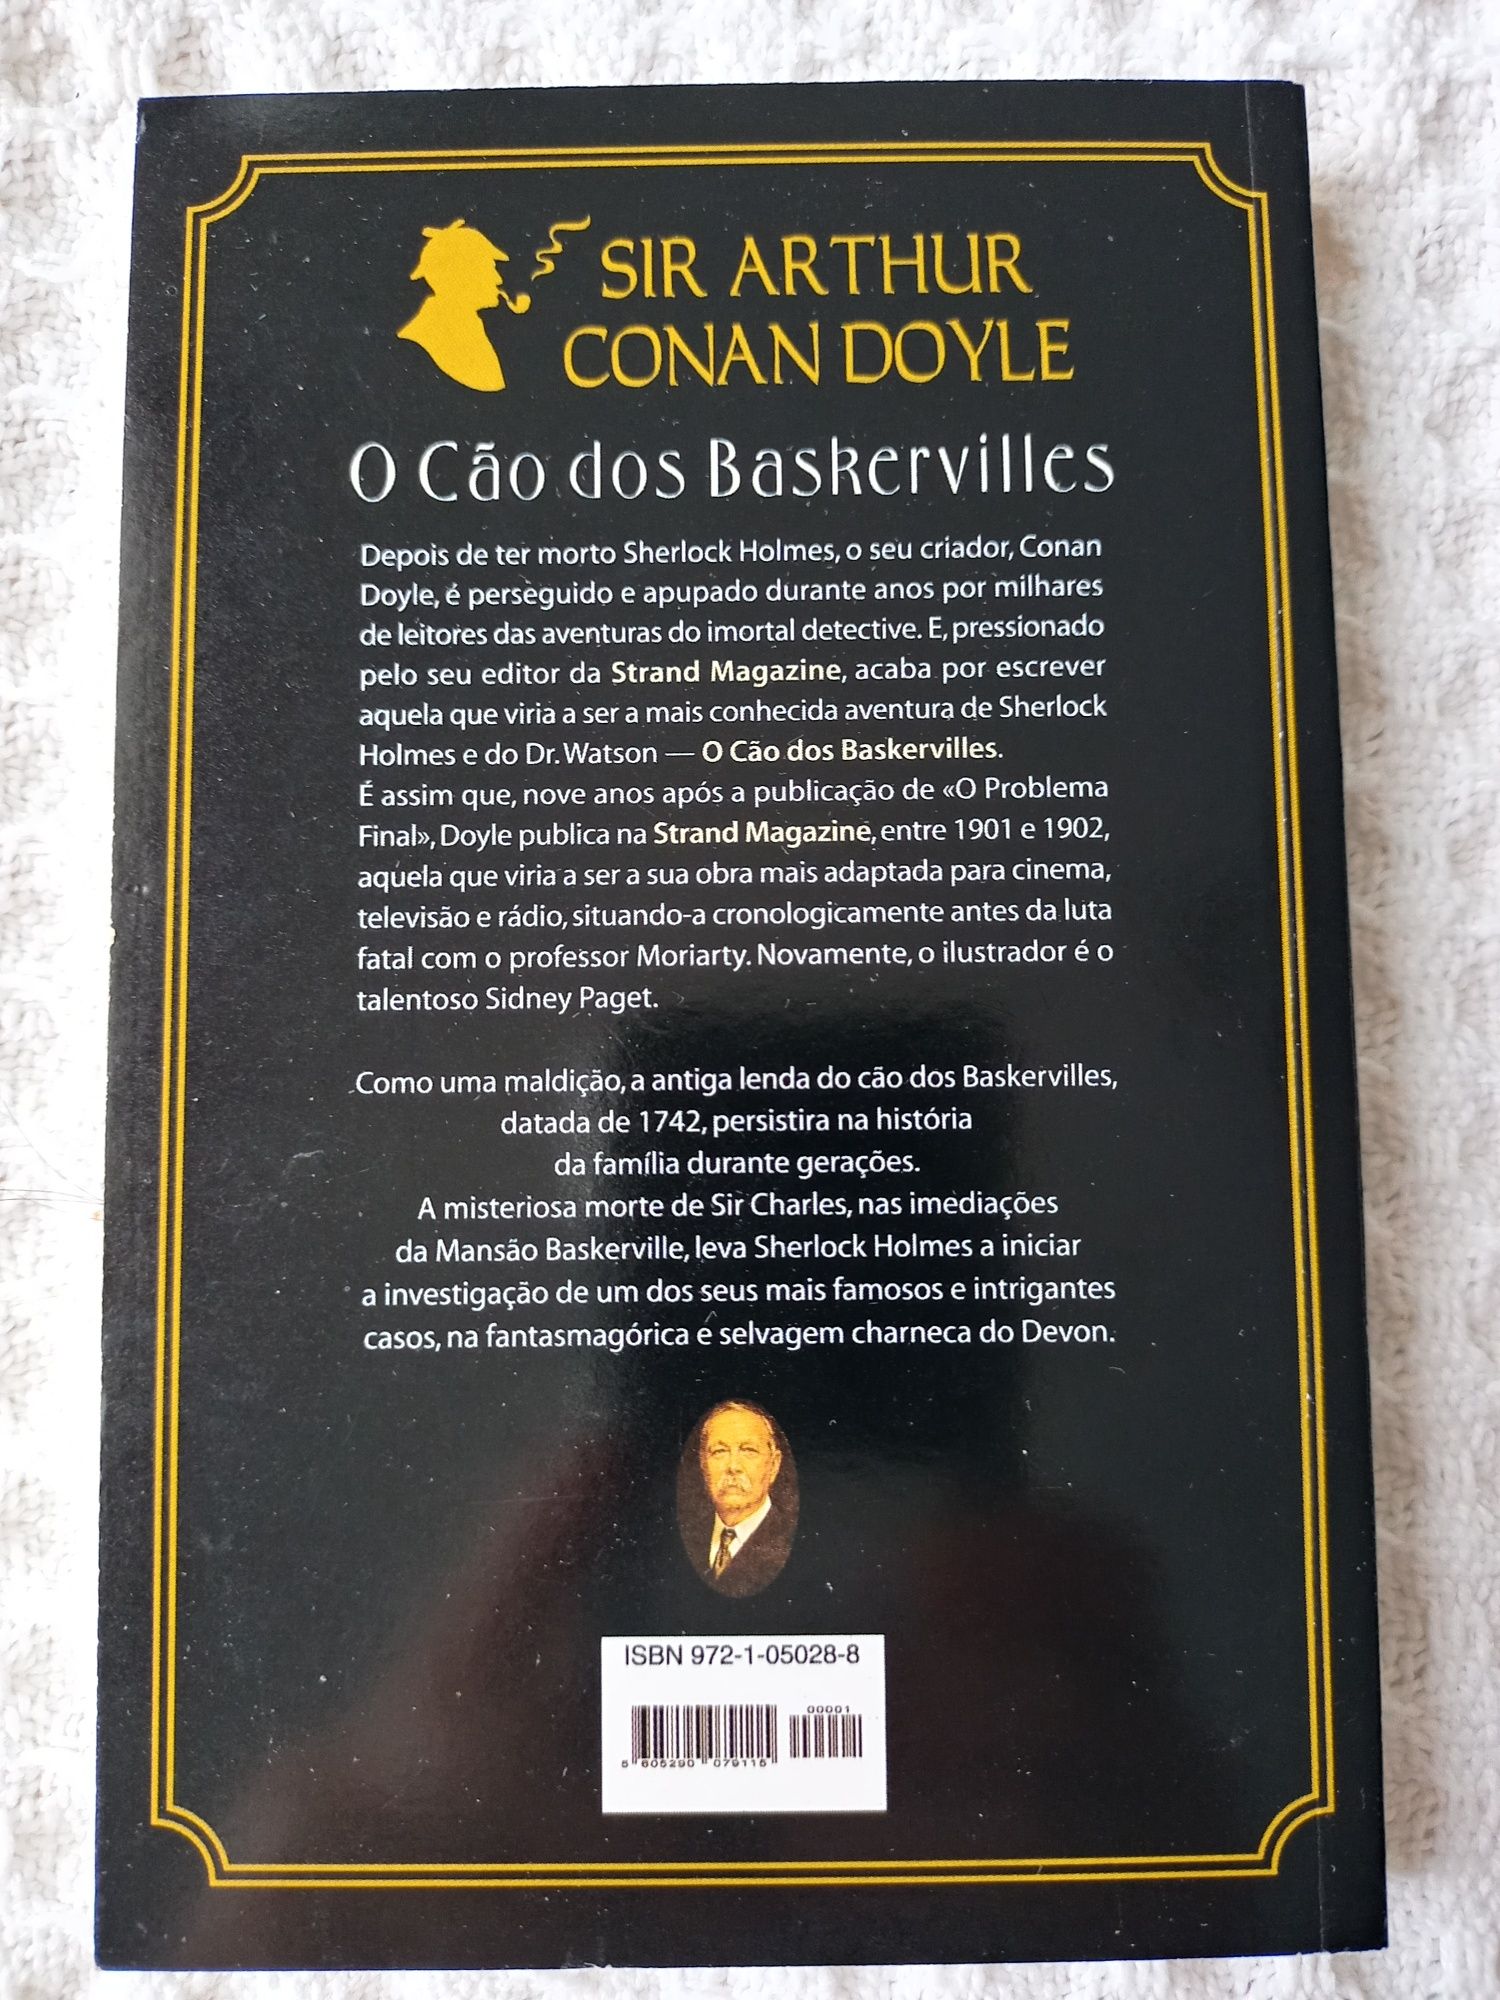 Livro de Sir Arthur Conan Doyle